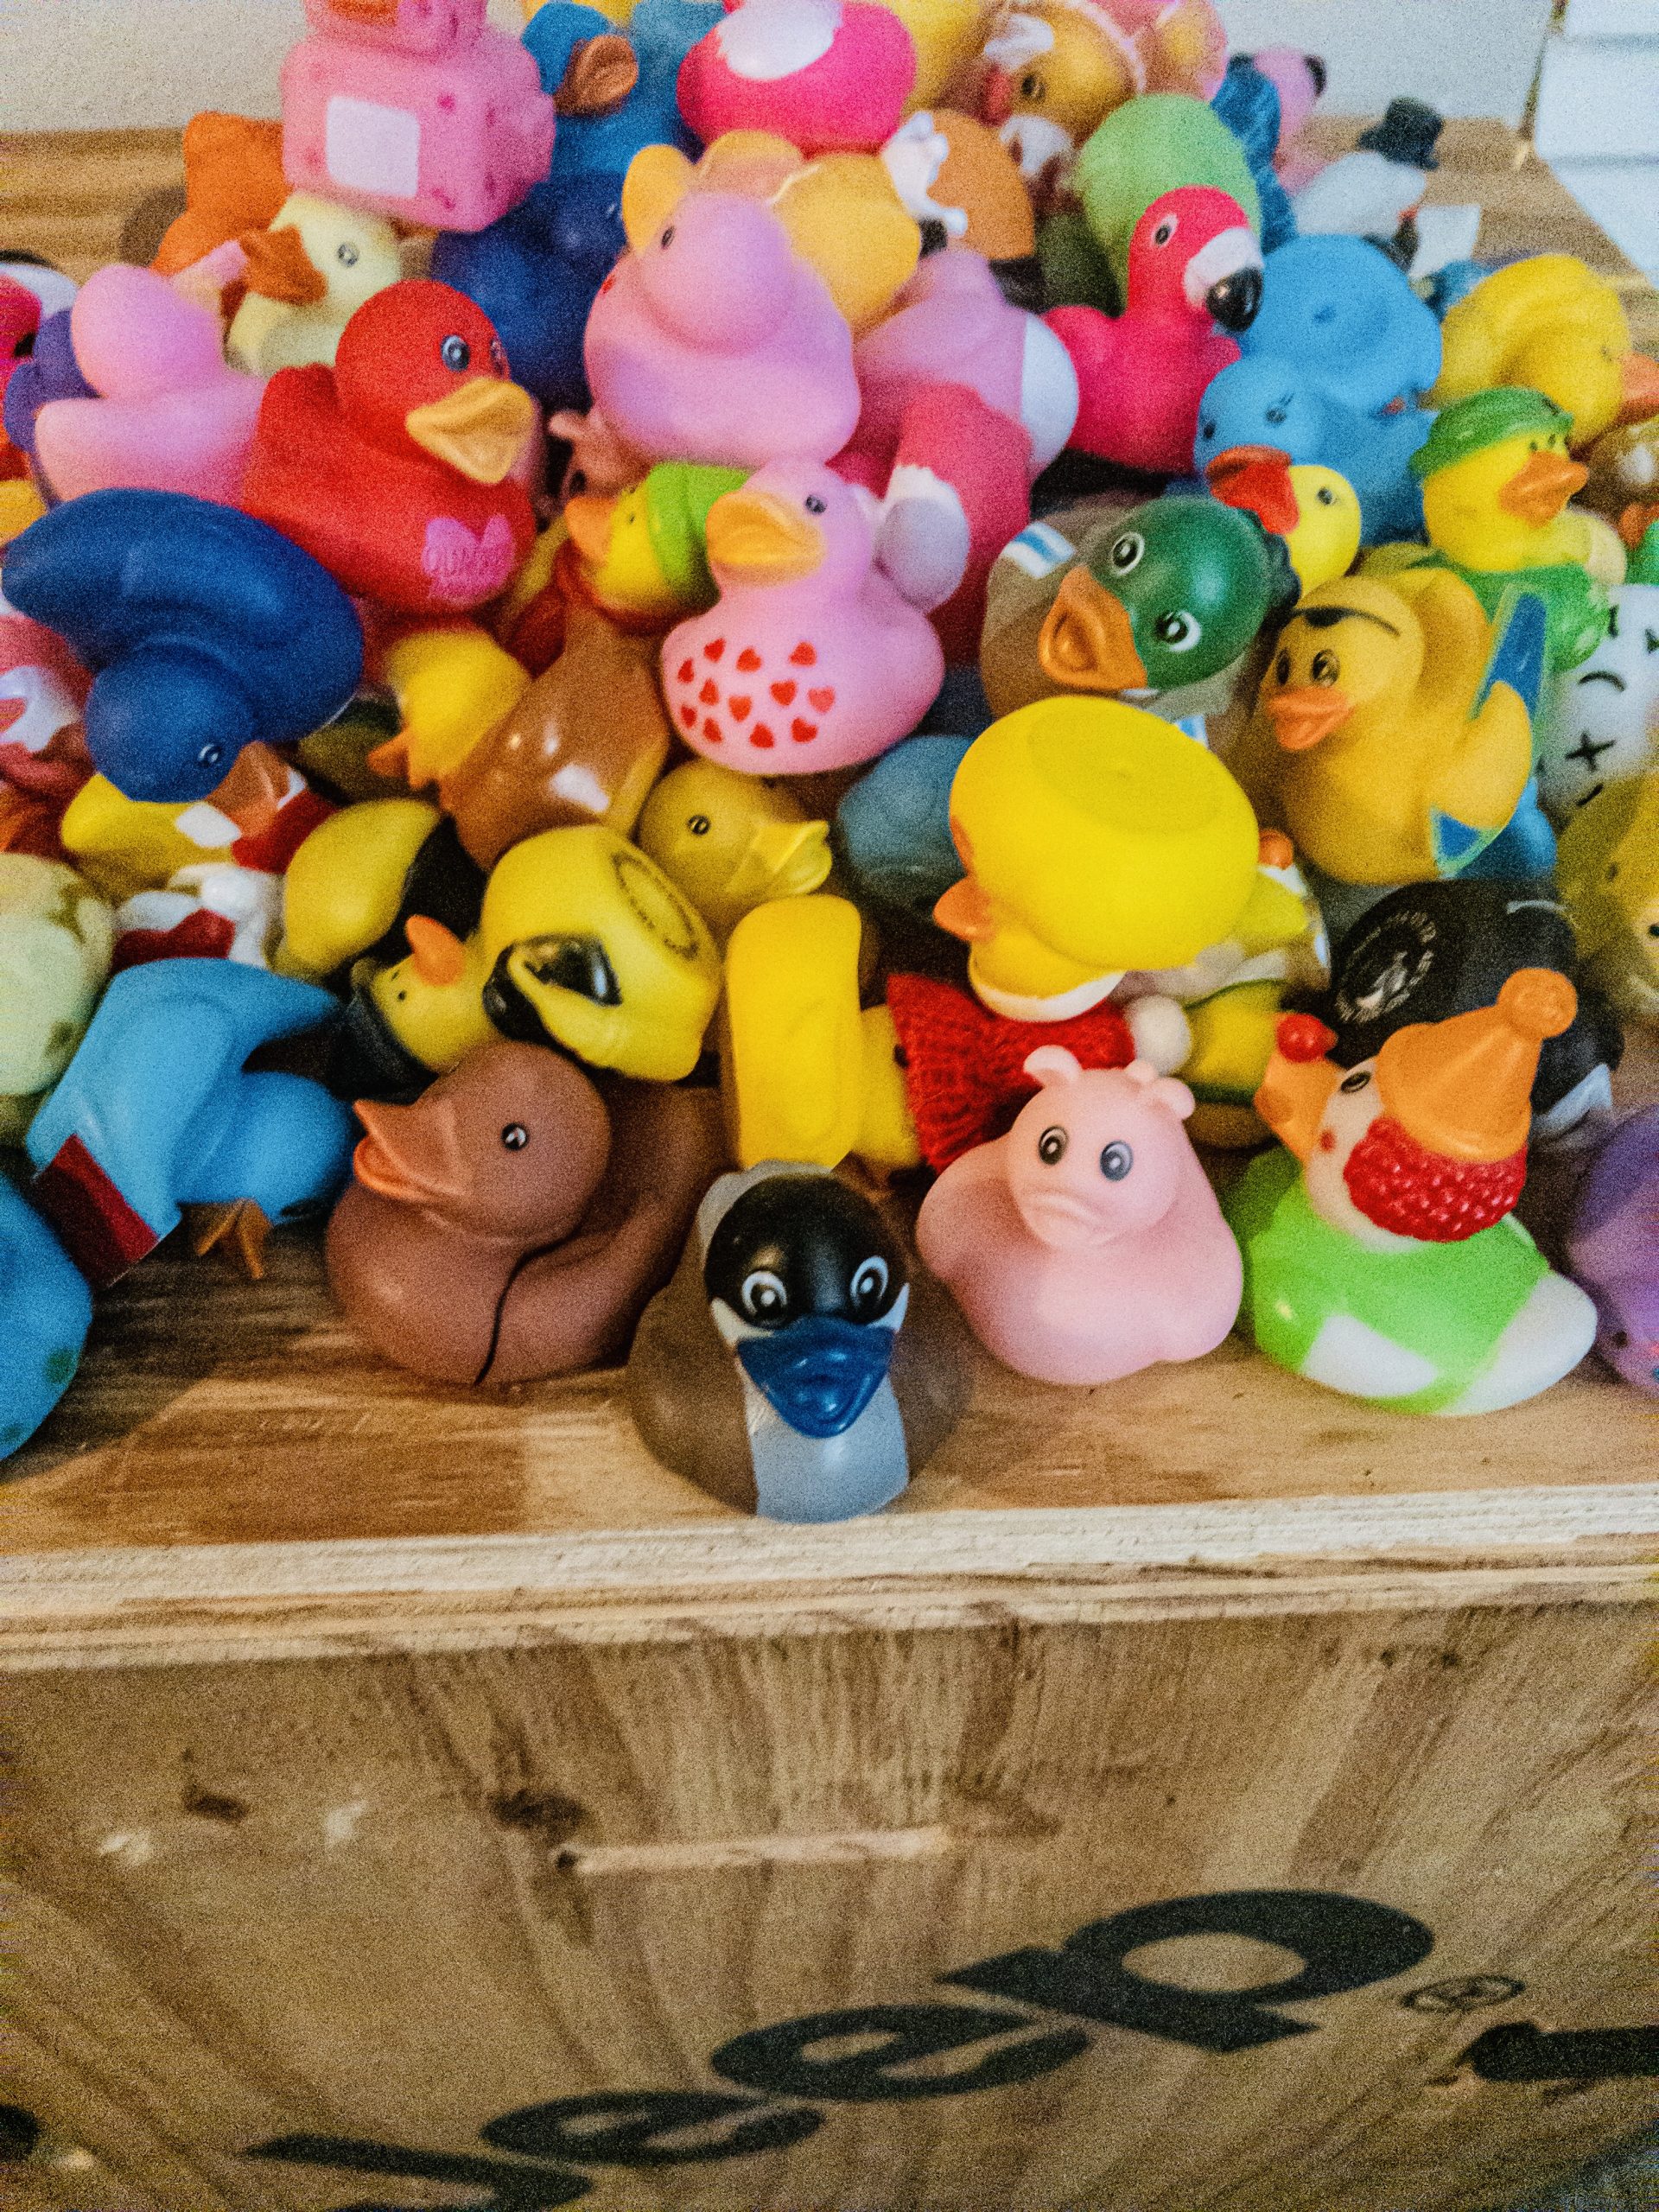 multi - colored 2" rubber ducks